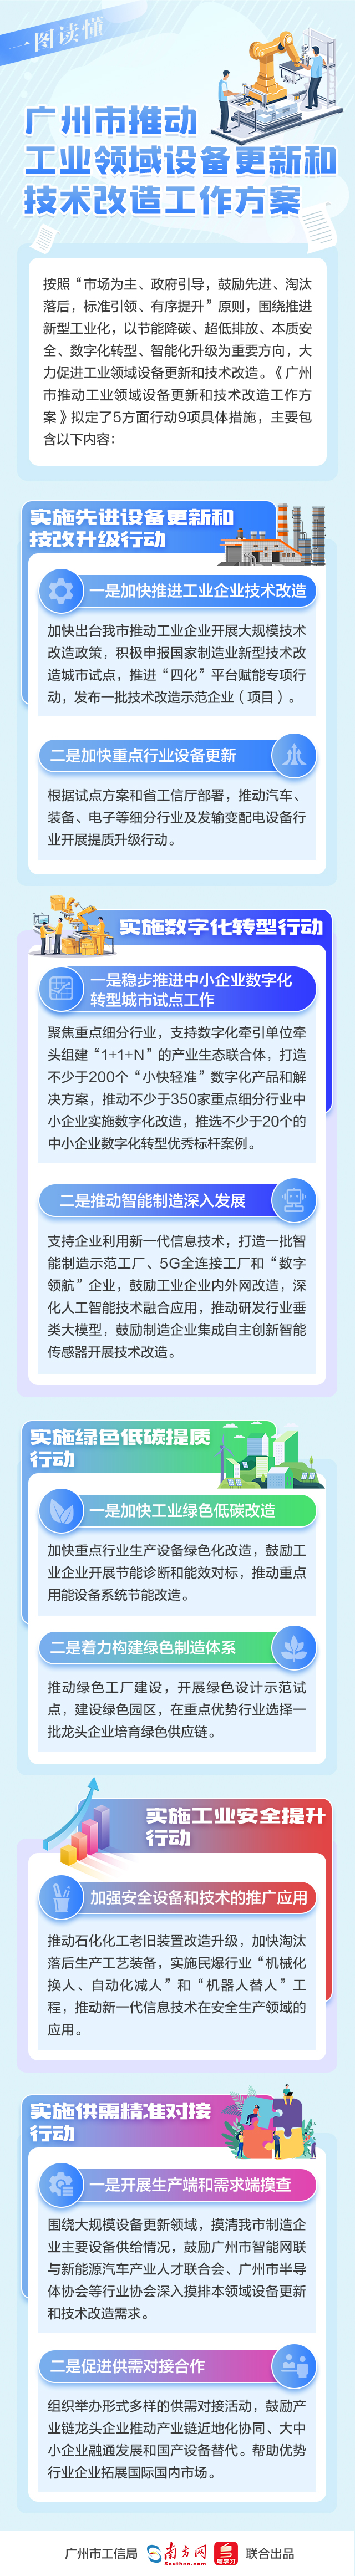 一图读懂《广州市推动工业领域设备更新和技术改造工作方案》.jpg